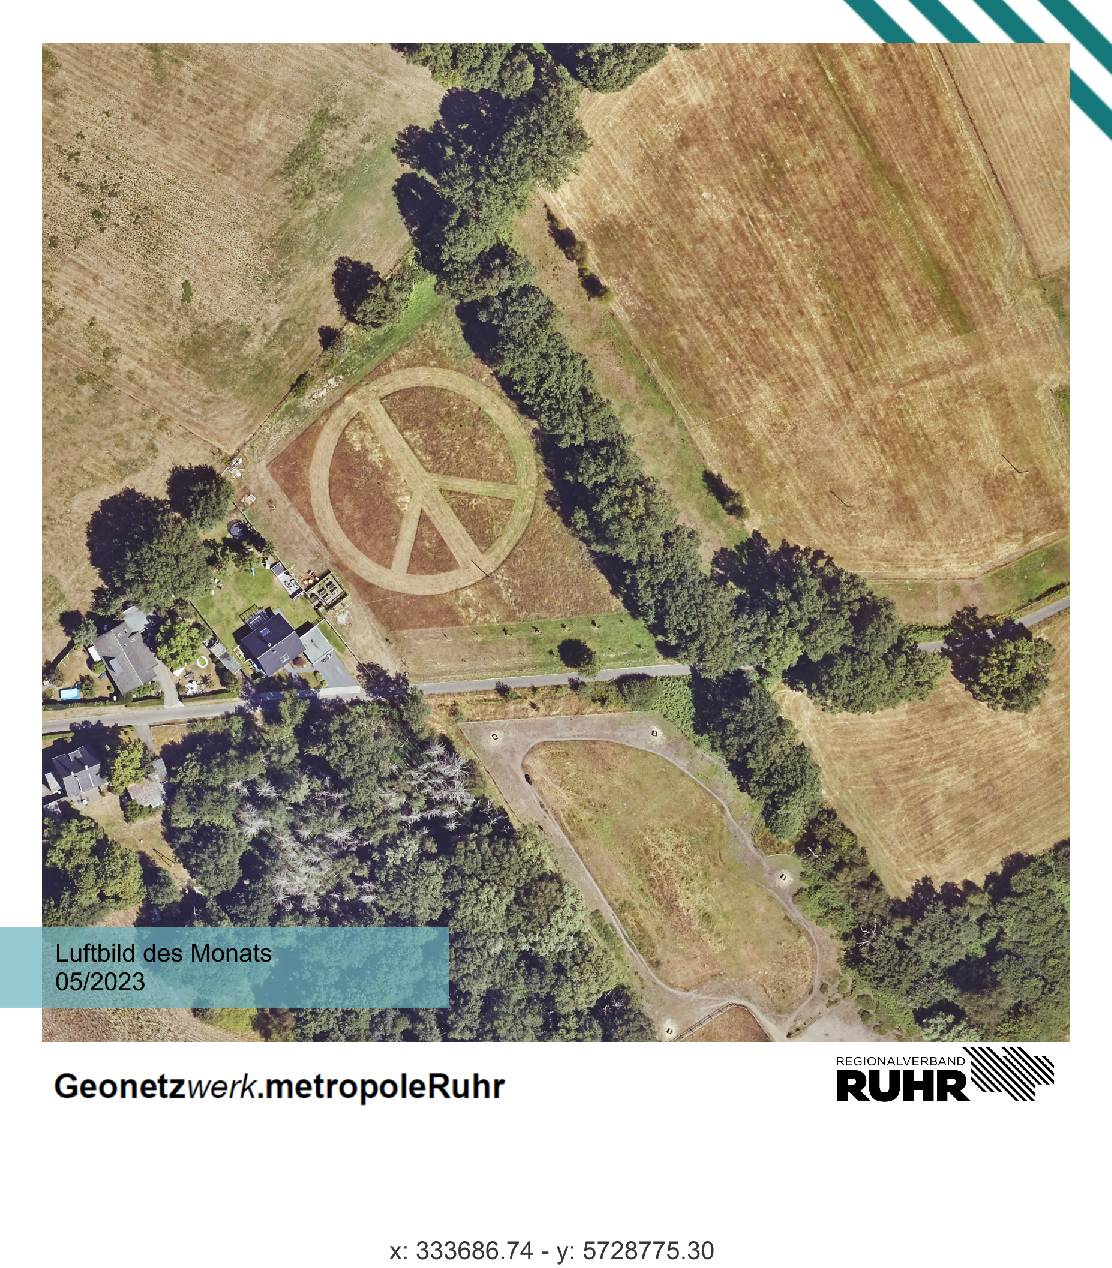 Luftbild des Monats Mai 2022 mit einem Peace-Zeichen auf einem Feld der Stadt Wesel.